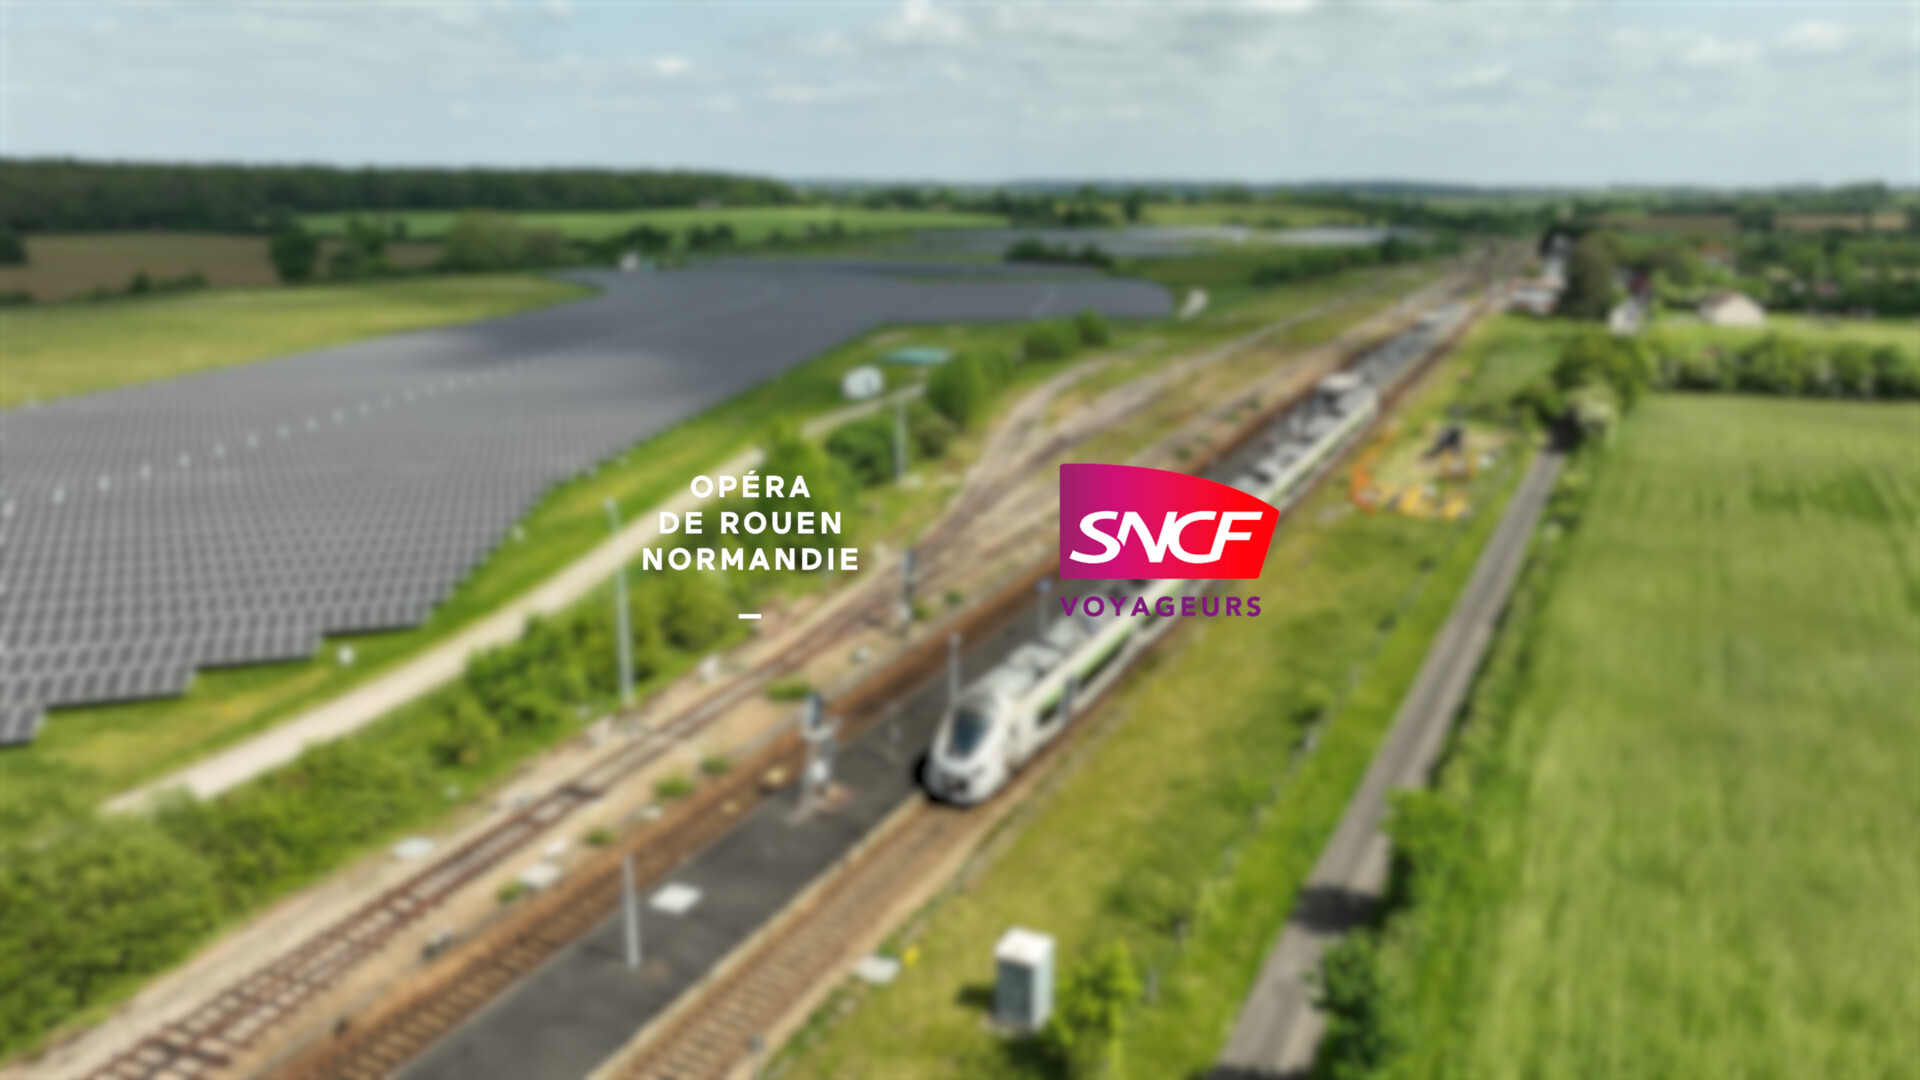 La SNCF et l’Opéra œuvrent pour la transition écologique